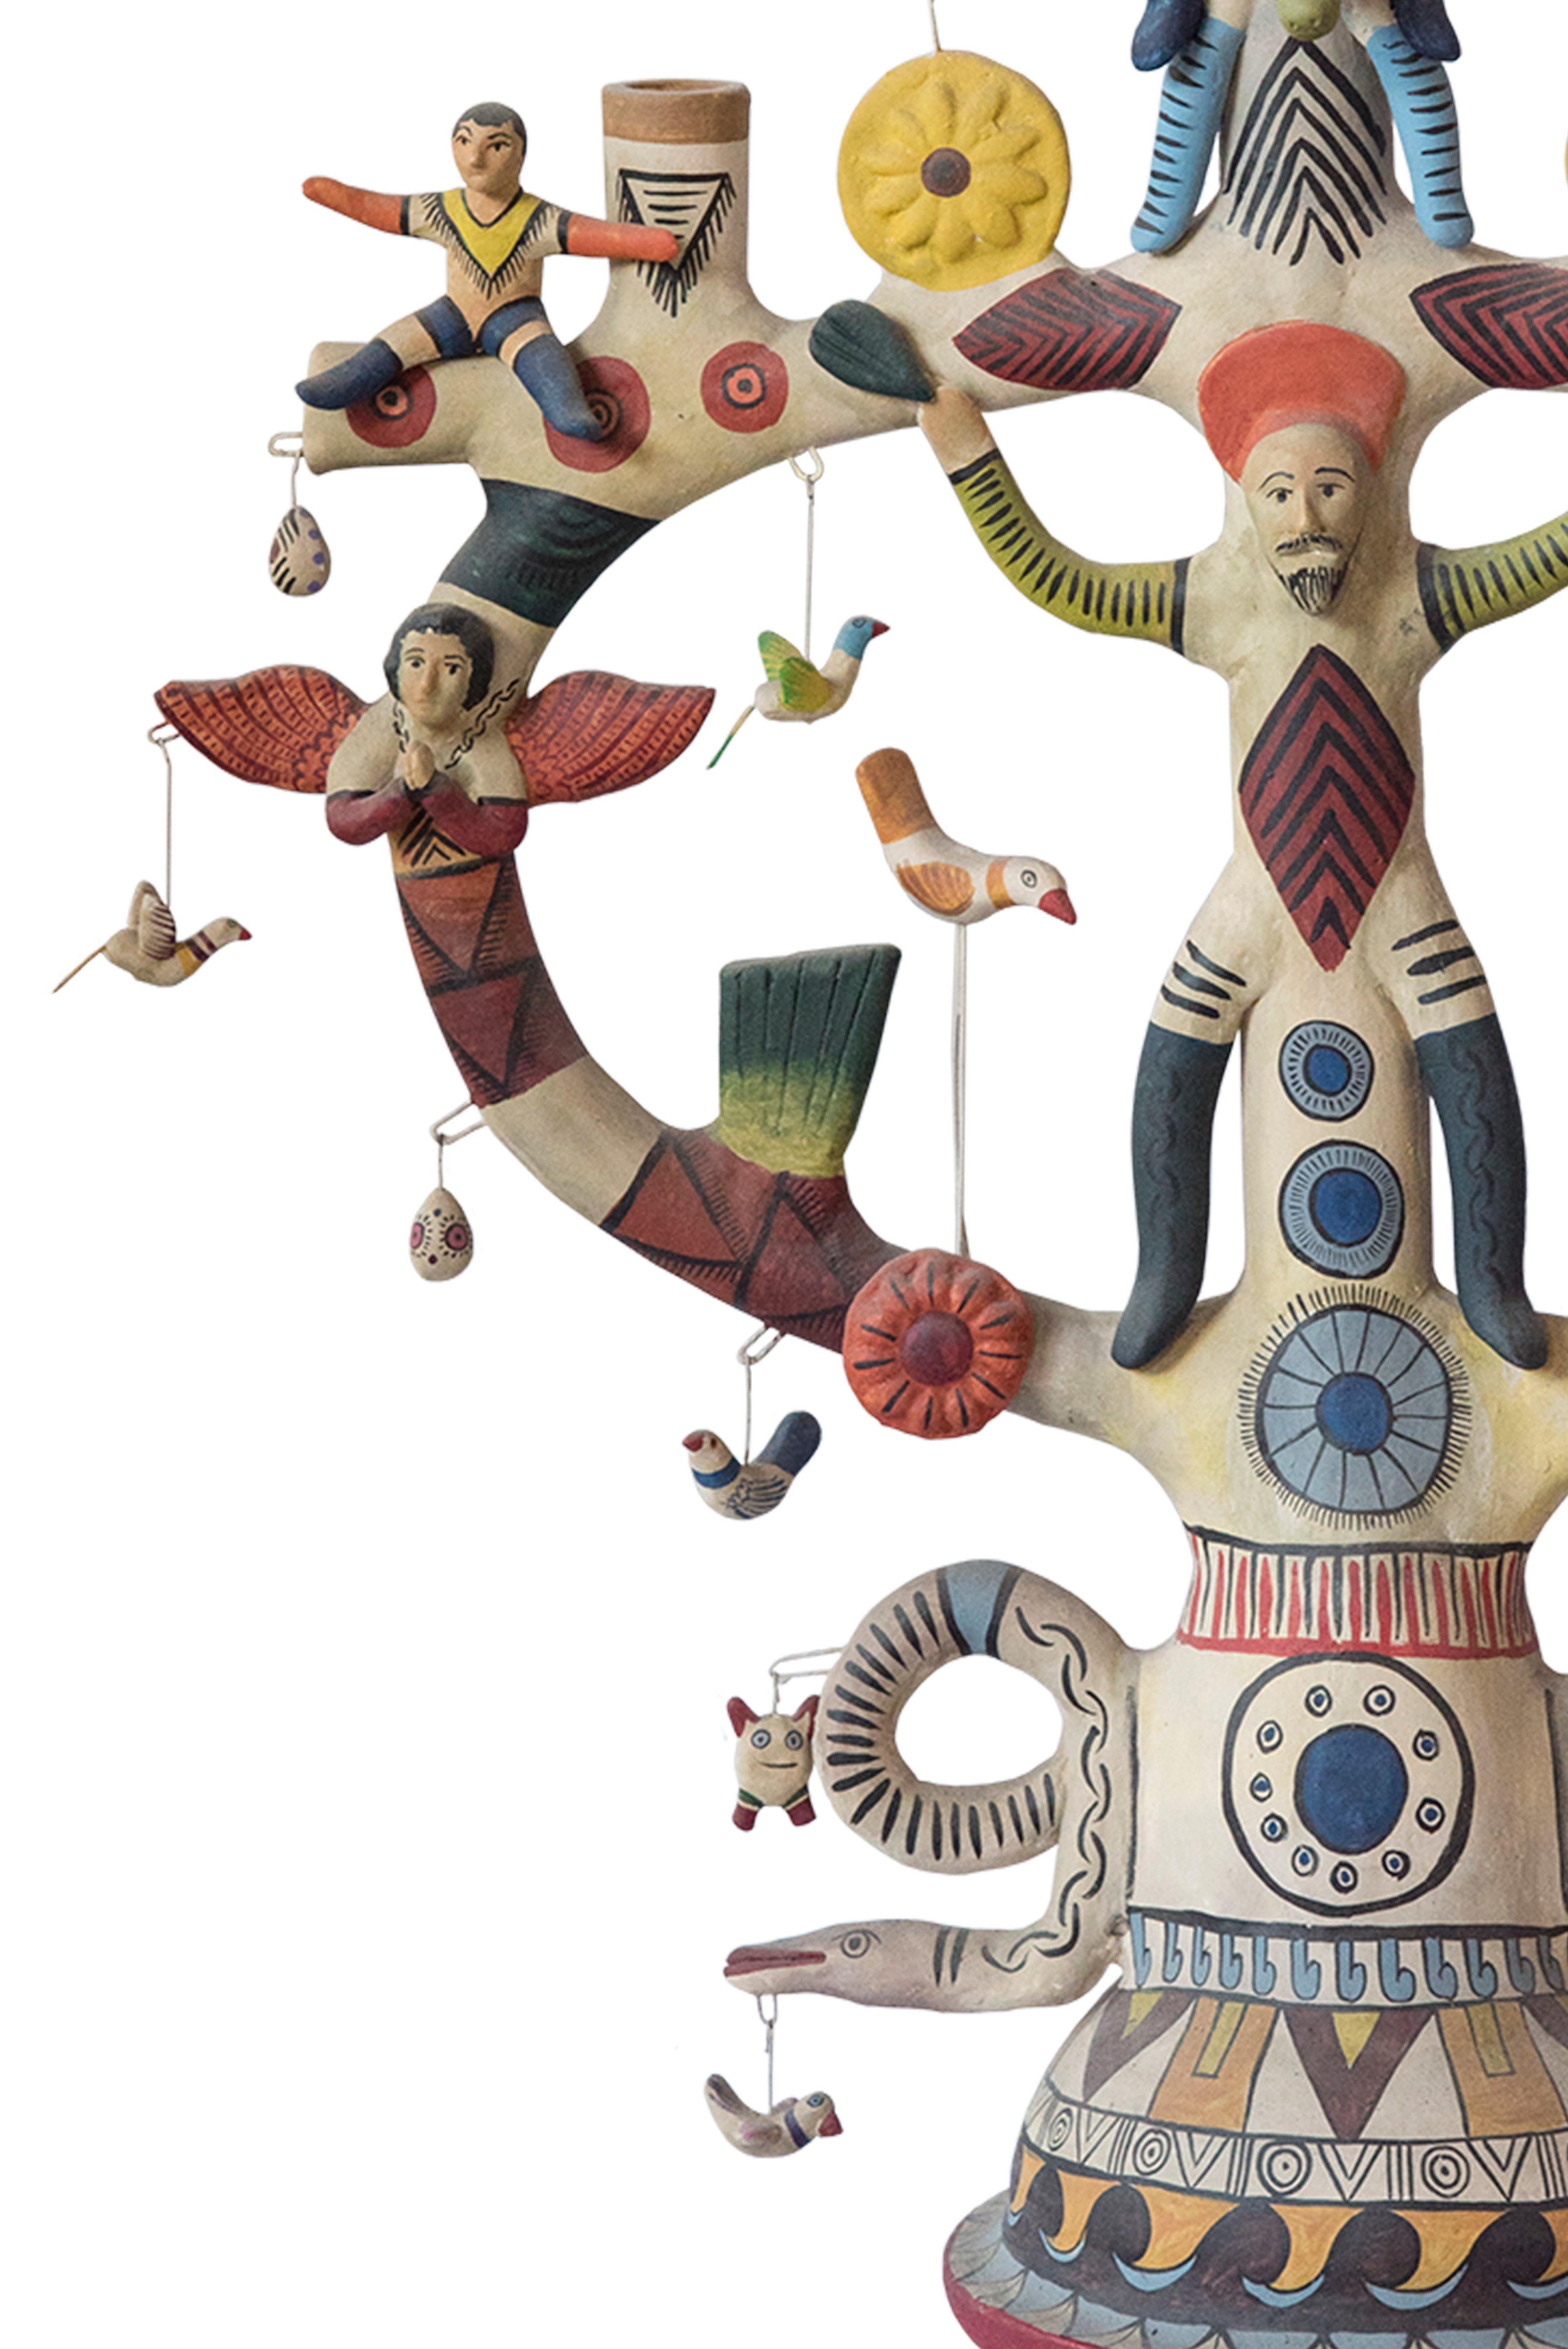 Contemporary Mexican Antique Style Arbol de la Vida Colorful Folk Art Candelabra Ceramic Clay